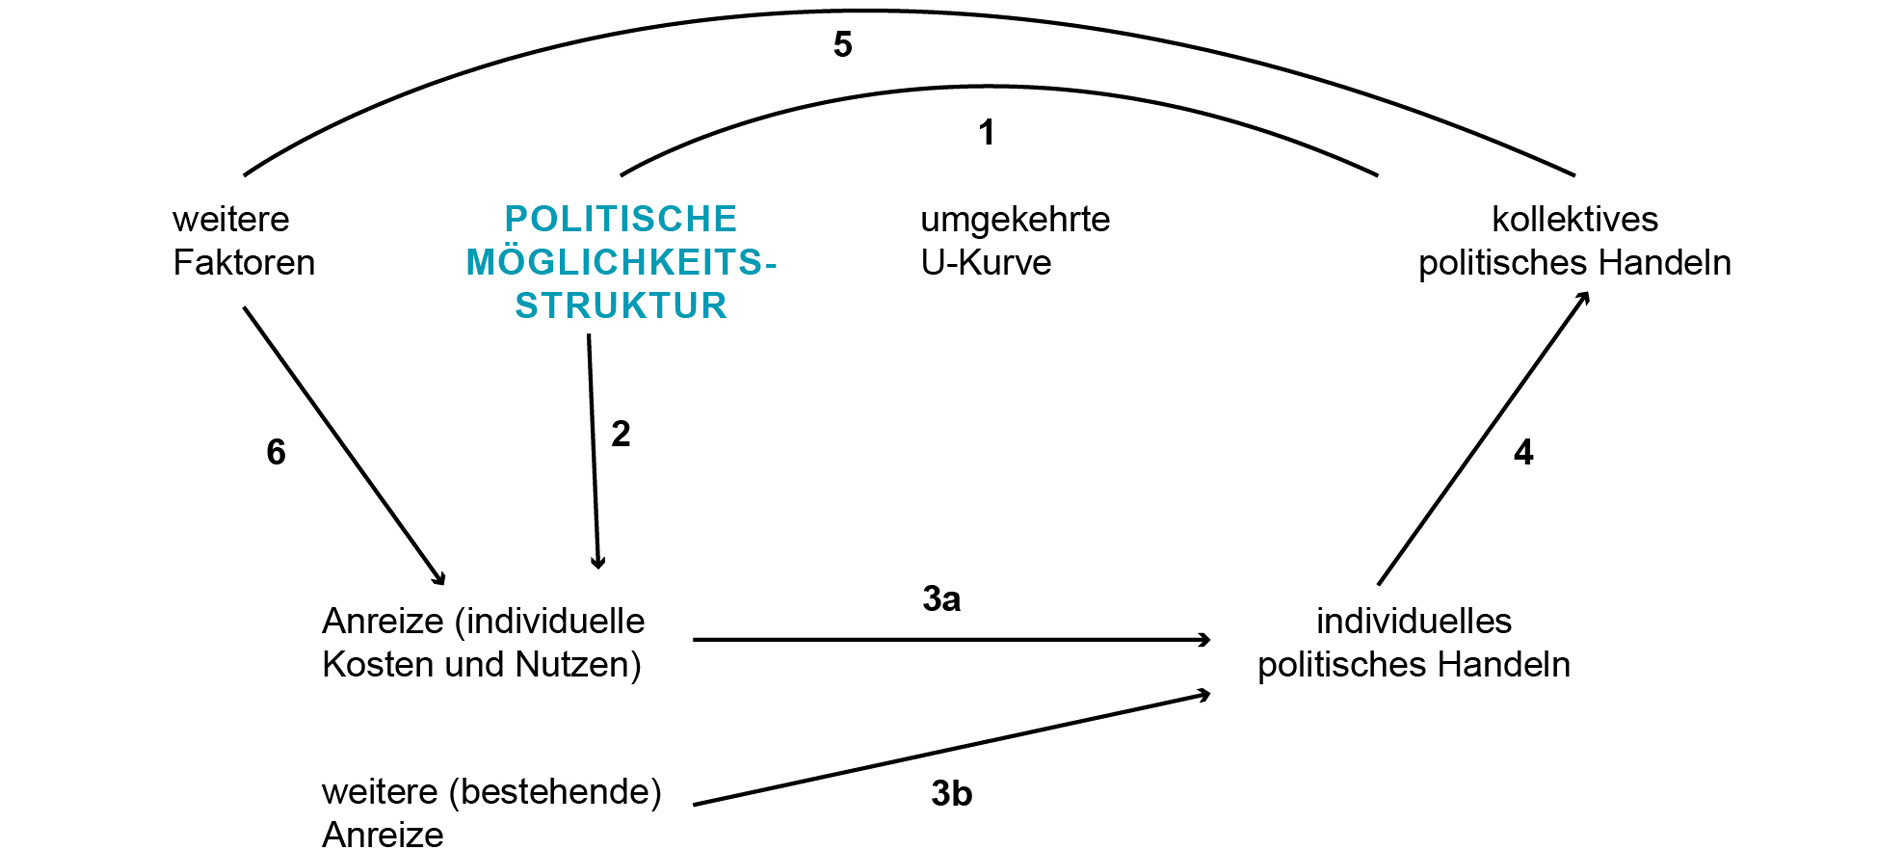 Die Abbildung zeigt Eisingers Theorie der politischen Möglichkeitsstruktur als Schaubild. Dabei wirkt sich das kollektive politische Handeln auf die politische Möglichkeitsstruktur aus, die wiederum mit weiteren Faktoren auf Anreize und die wiederum auf das individuelle politische Handeln wirkt. 